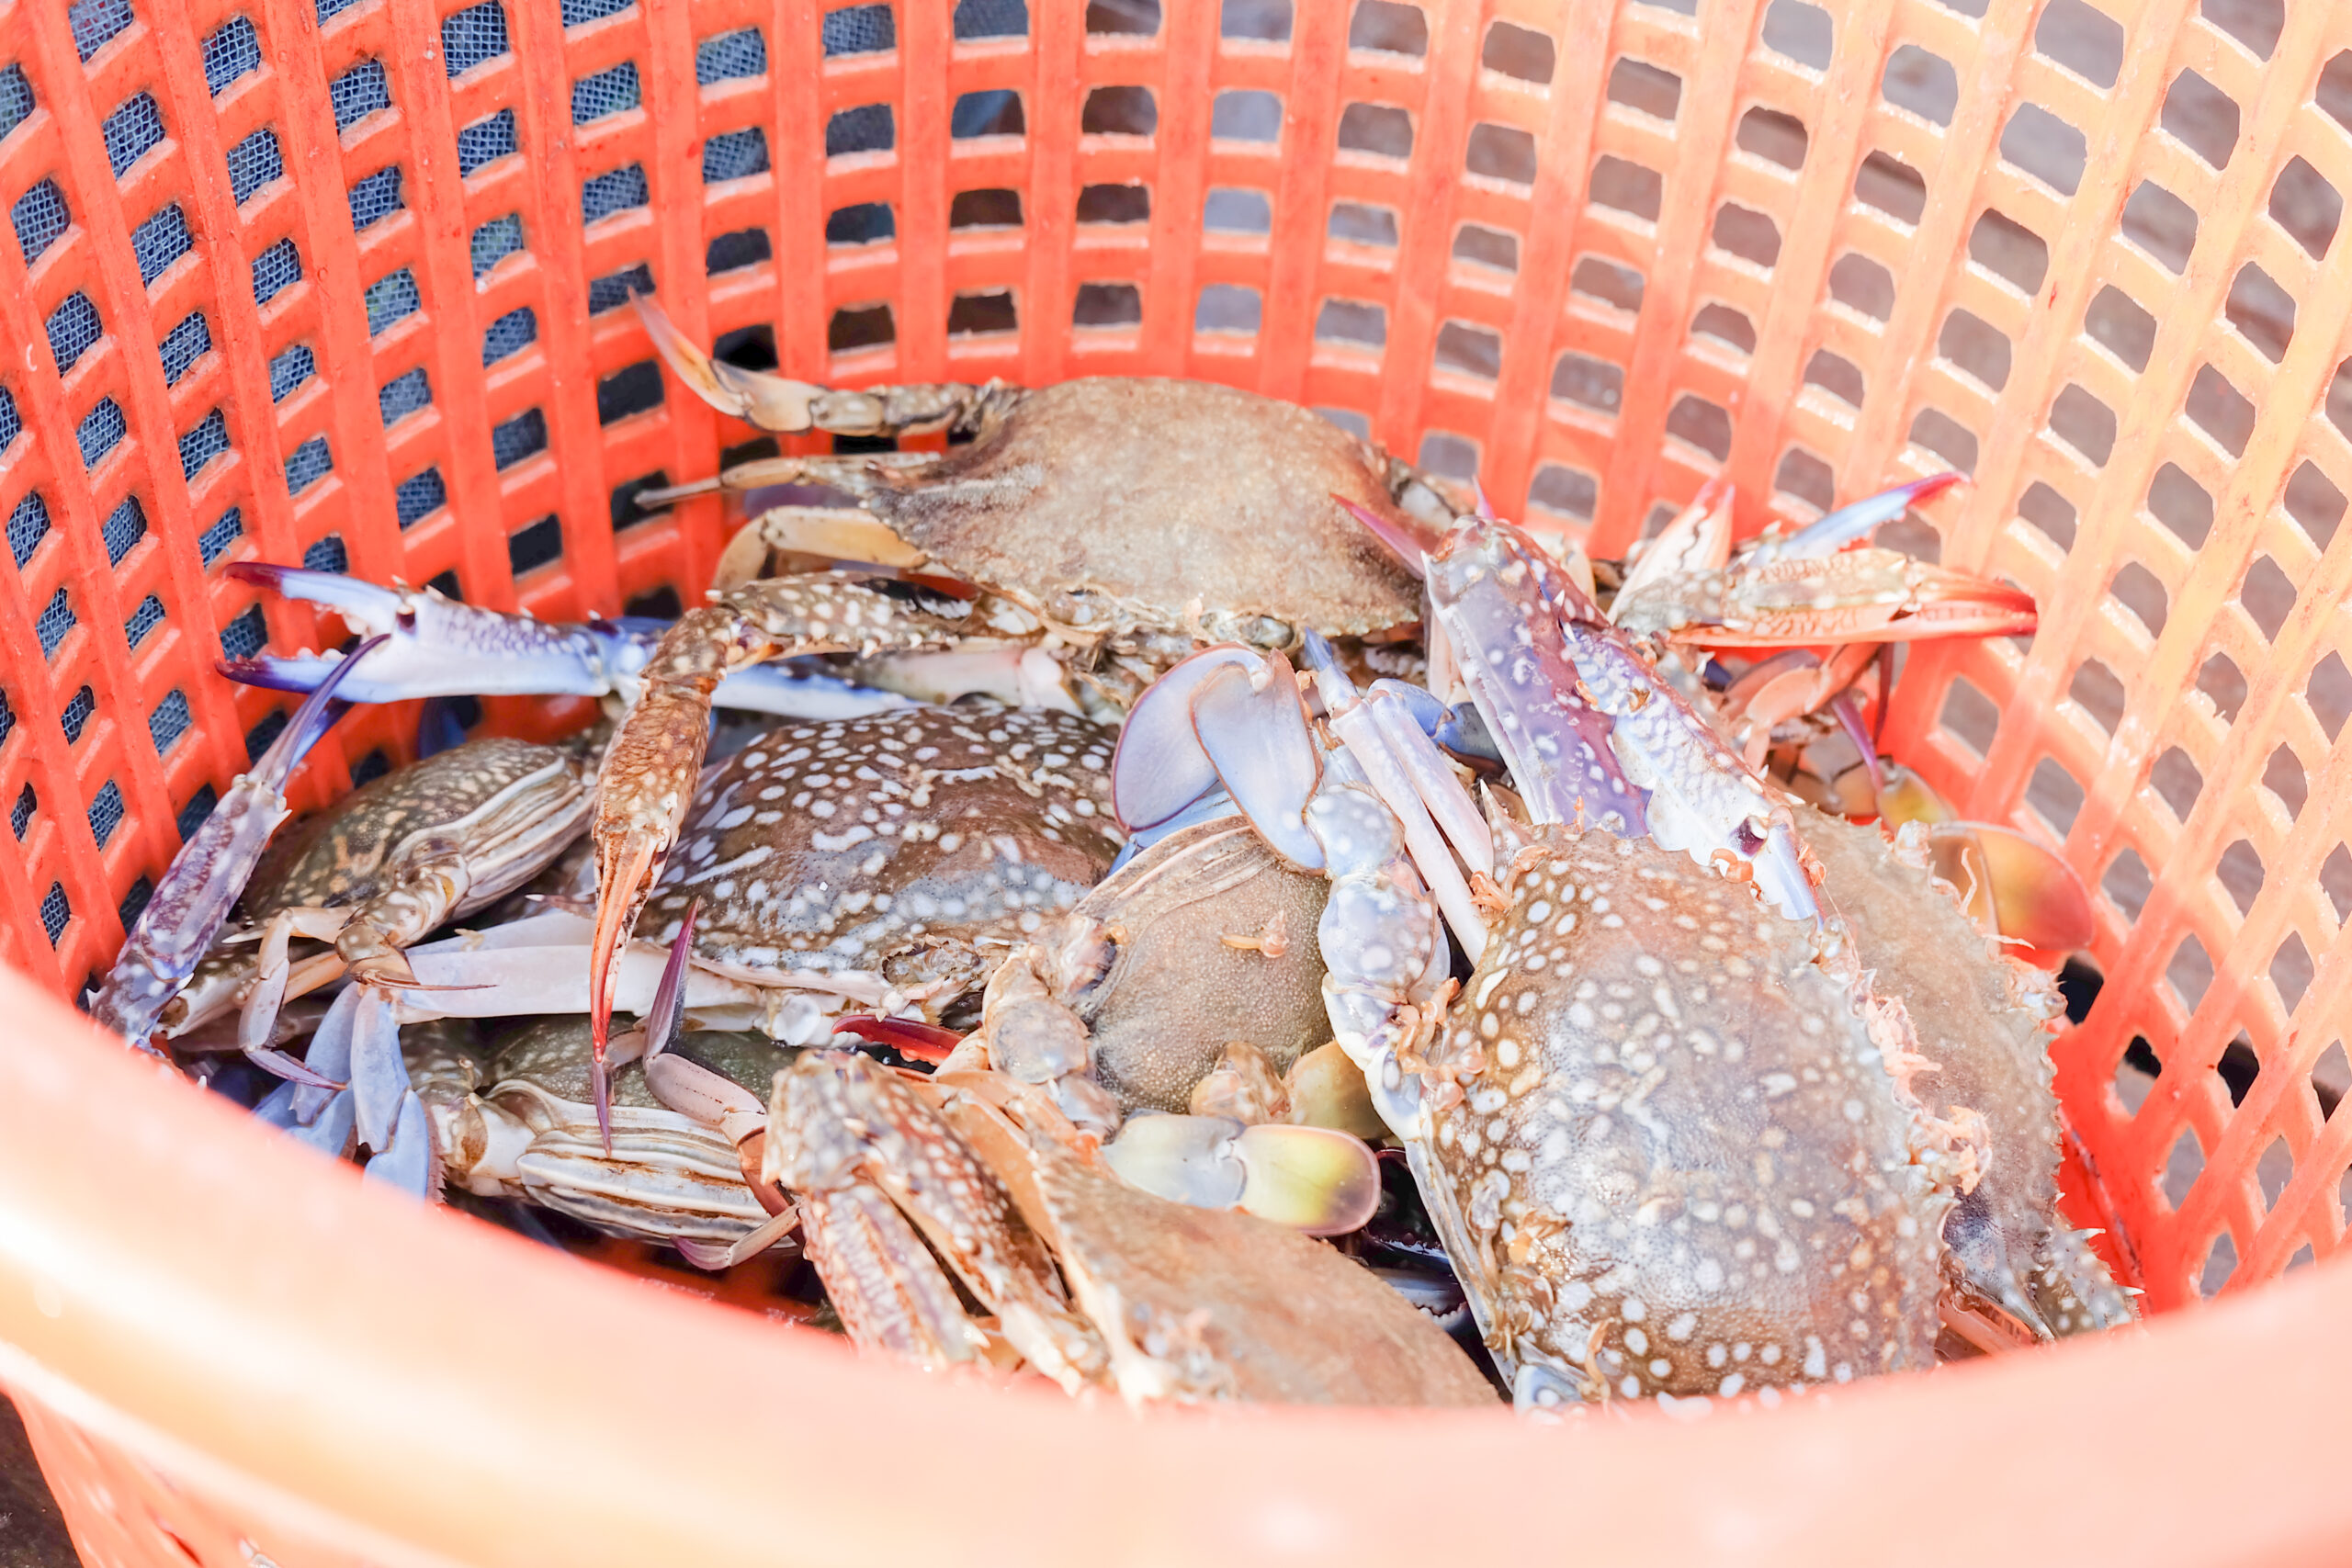 Crabs inside a basket